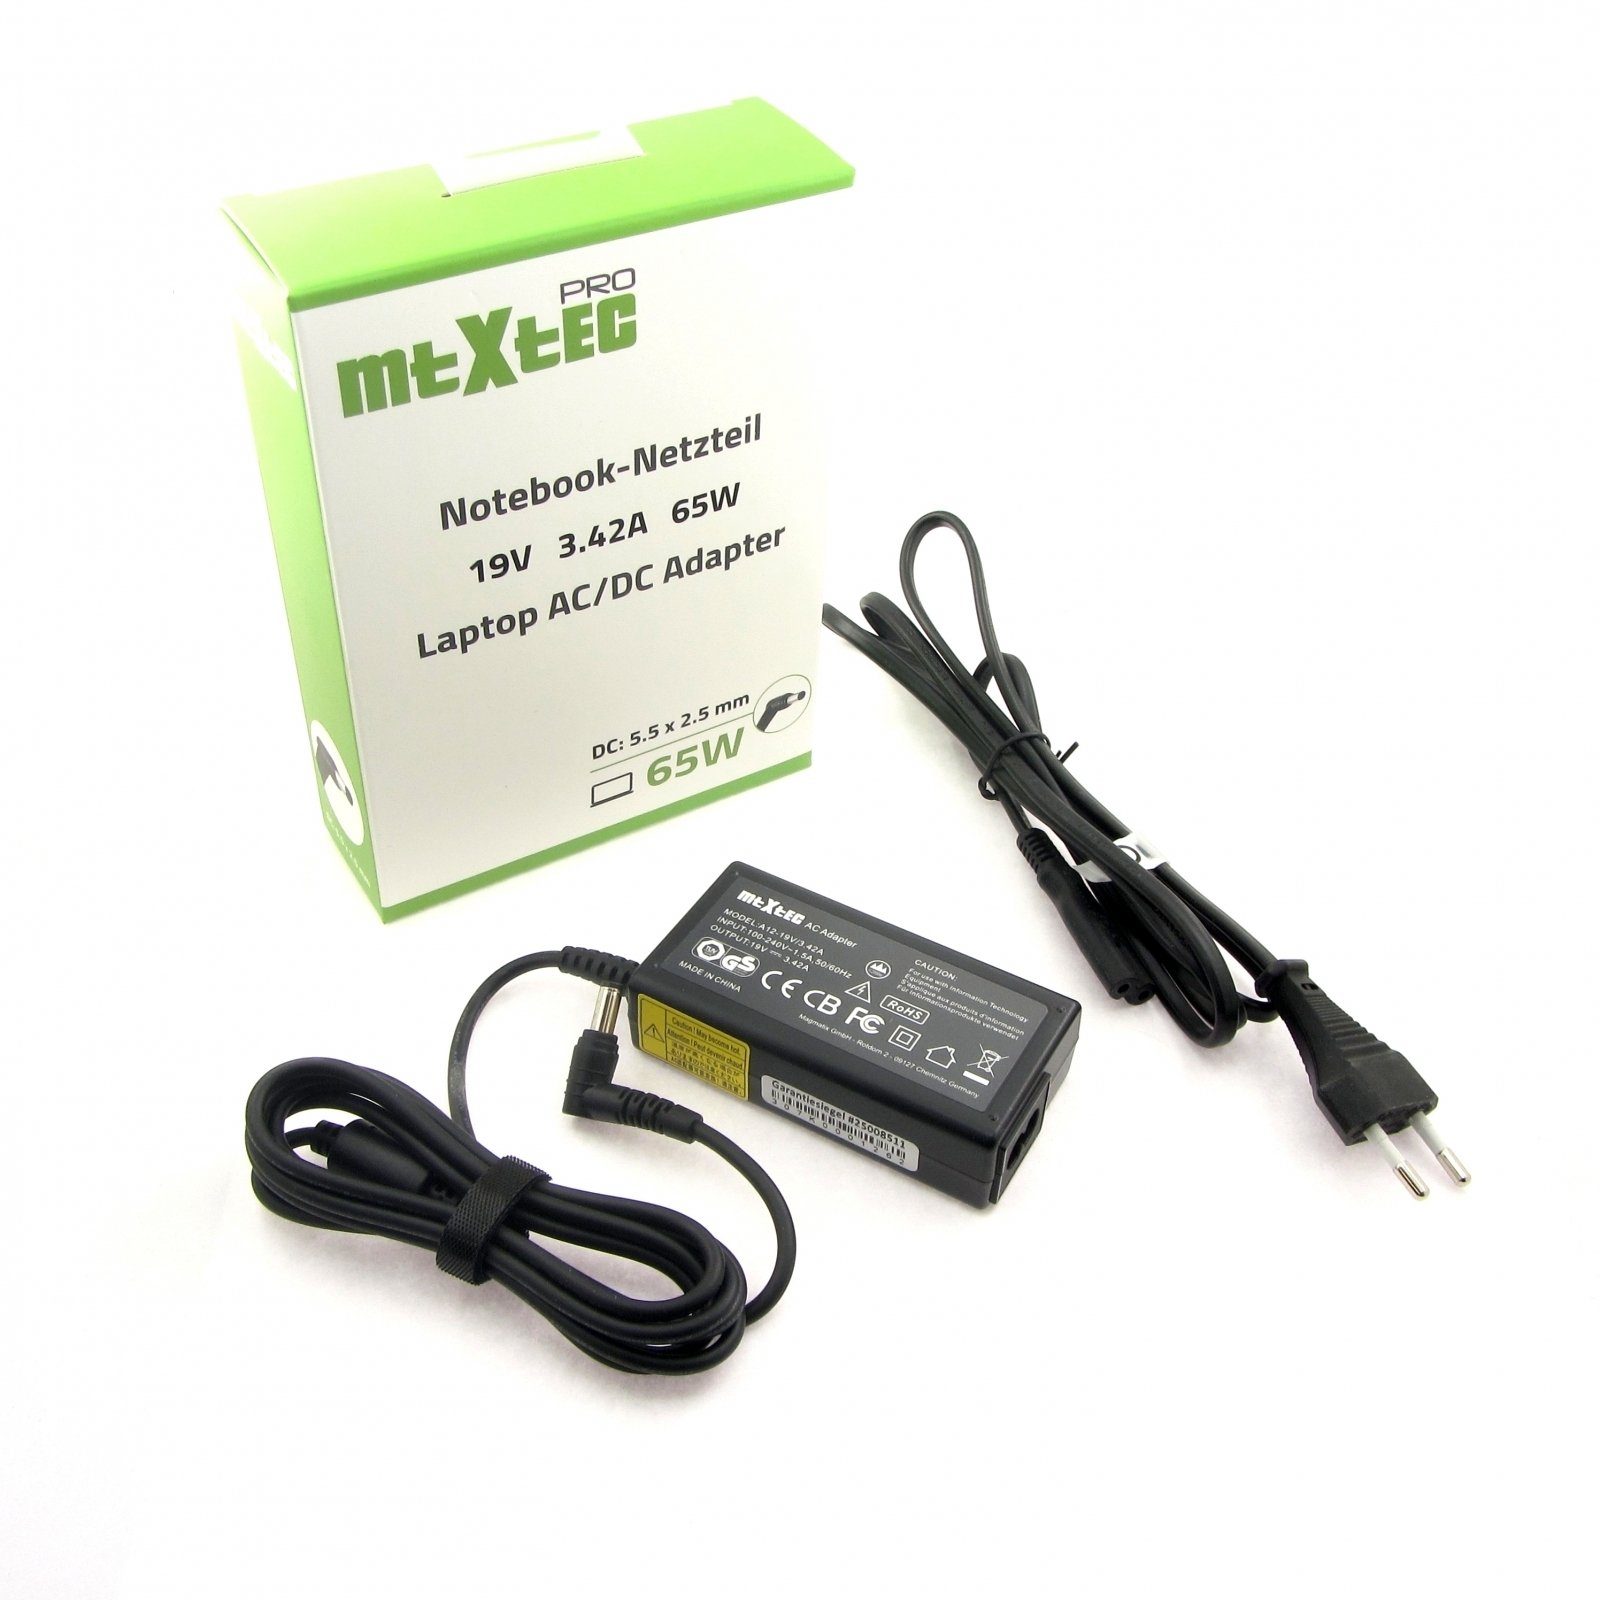 MTXtec Pro Netzteil 19V, 3.42A, 65W für Asus, Toshiba, Medion mit Stecke  Notebook-Netzteil (Stecker: 5.5 x 2.5 mm rund, Ausgangsleistung: 65 W)